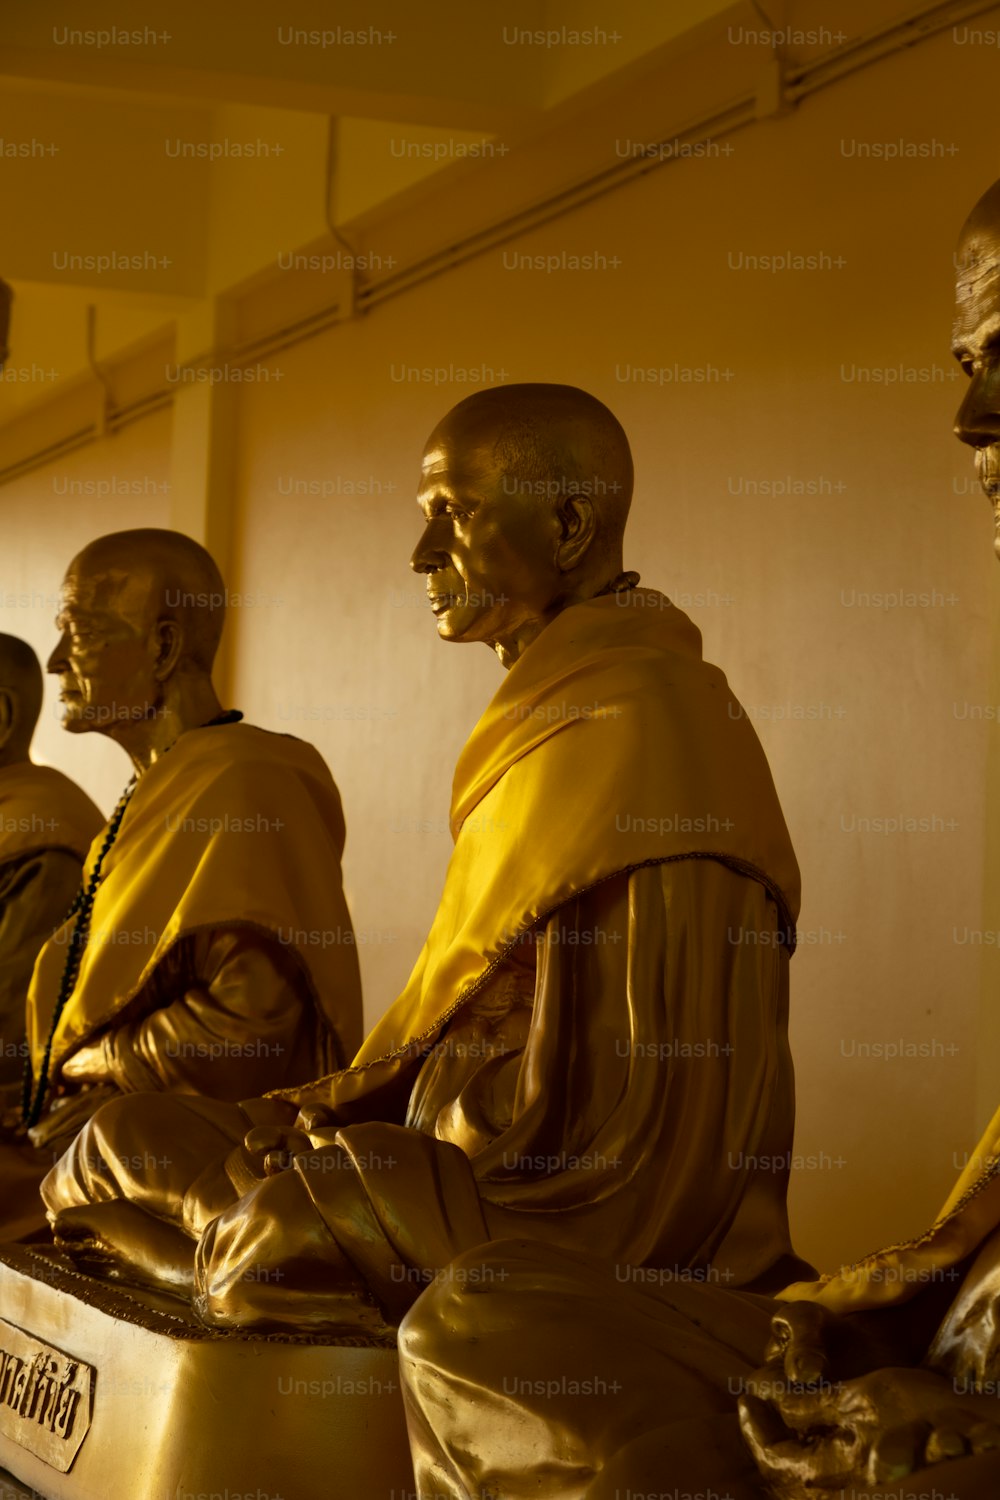 隣り合って座っている仏像のグループ